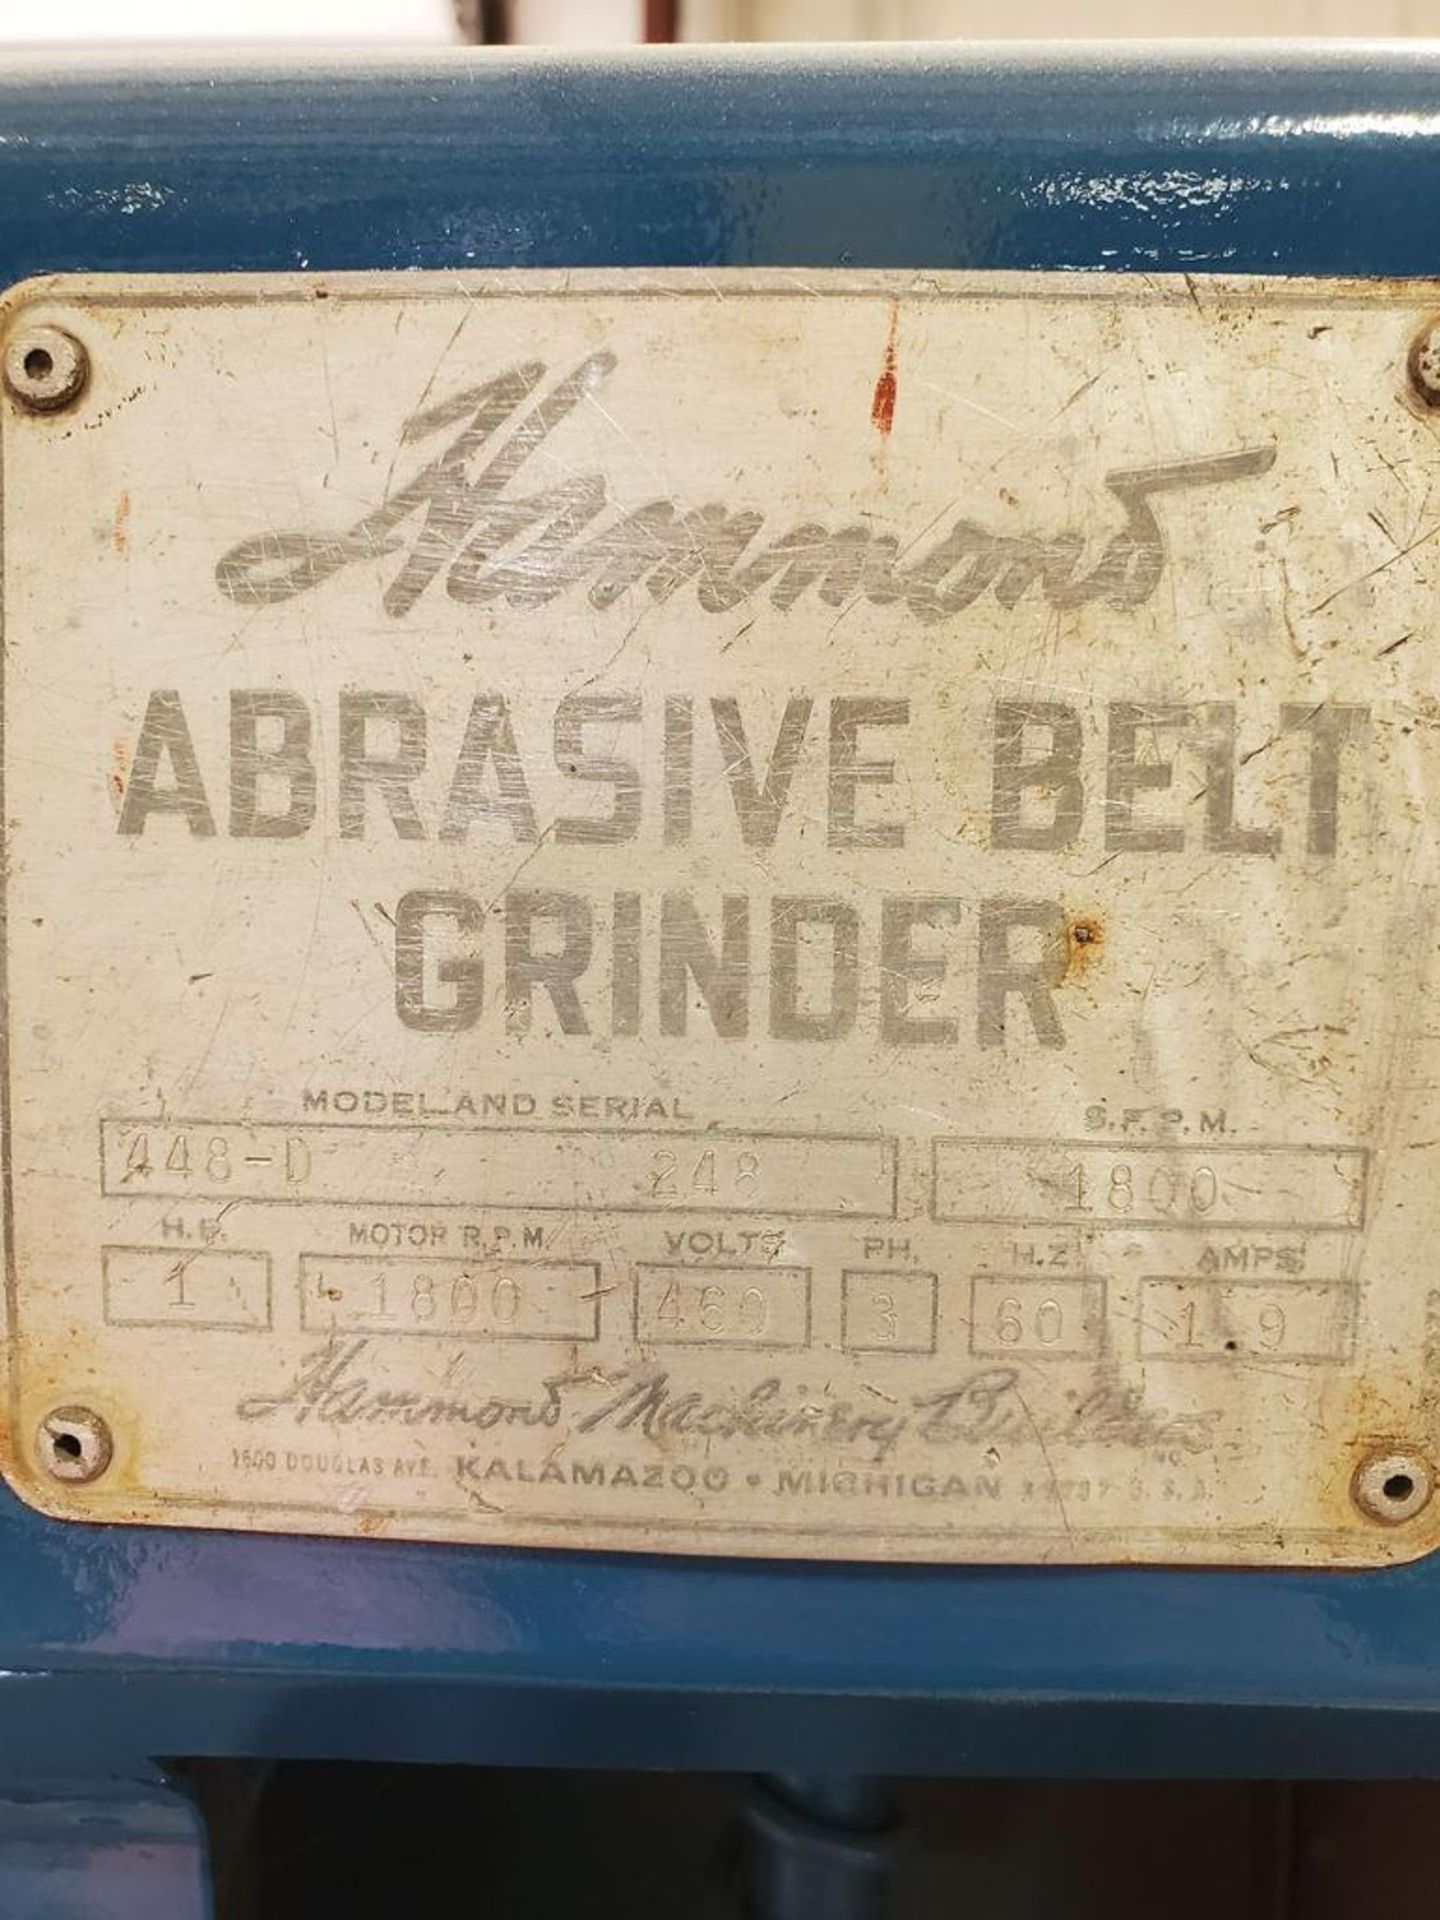 HAMMOND ABRASIVE BELT GRINDER; MODEL 448-D, S/N 248, 1,800 RPM,1.9 AMPS, 60-HZ, 3-PHASE, 460- - Image 6 of 6